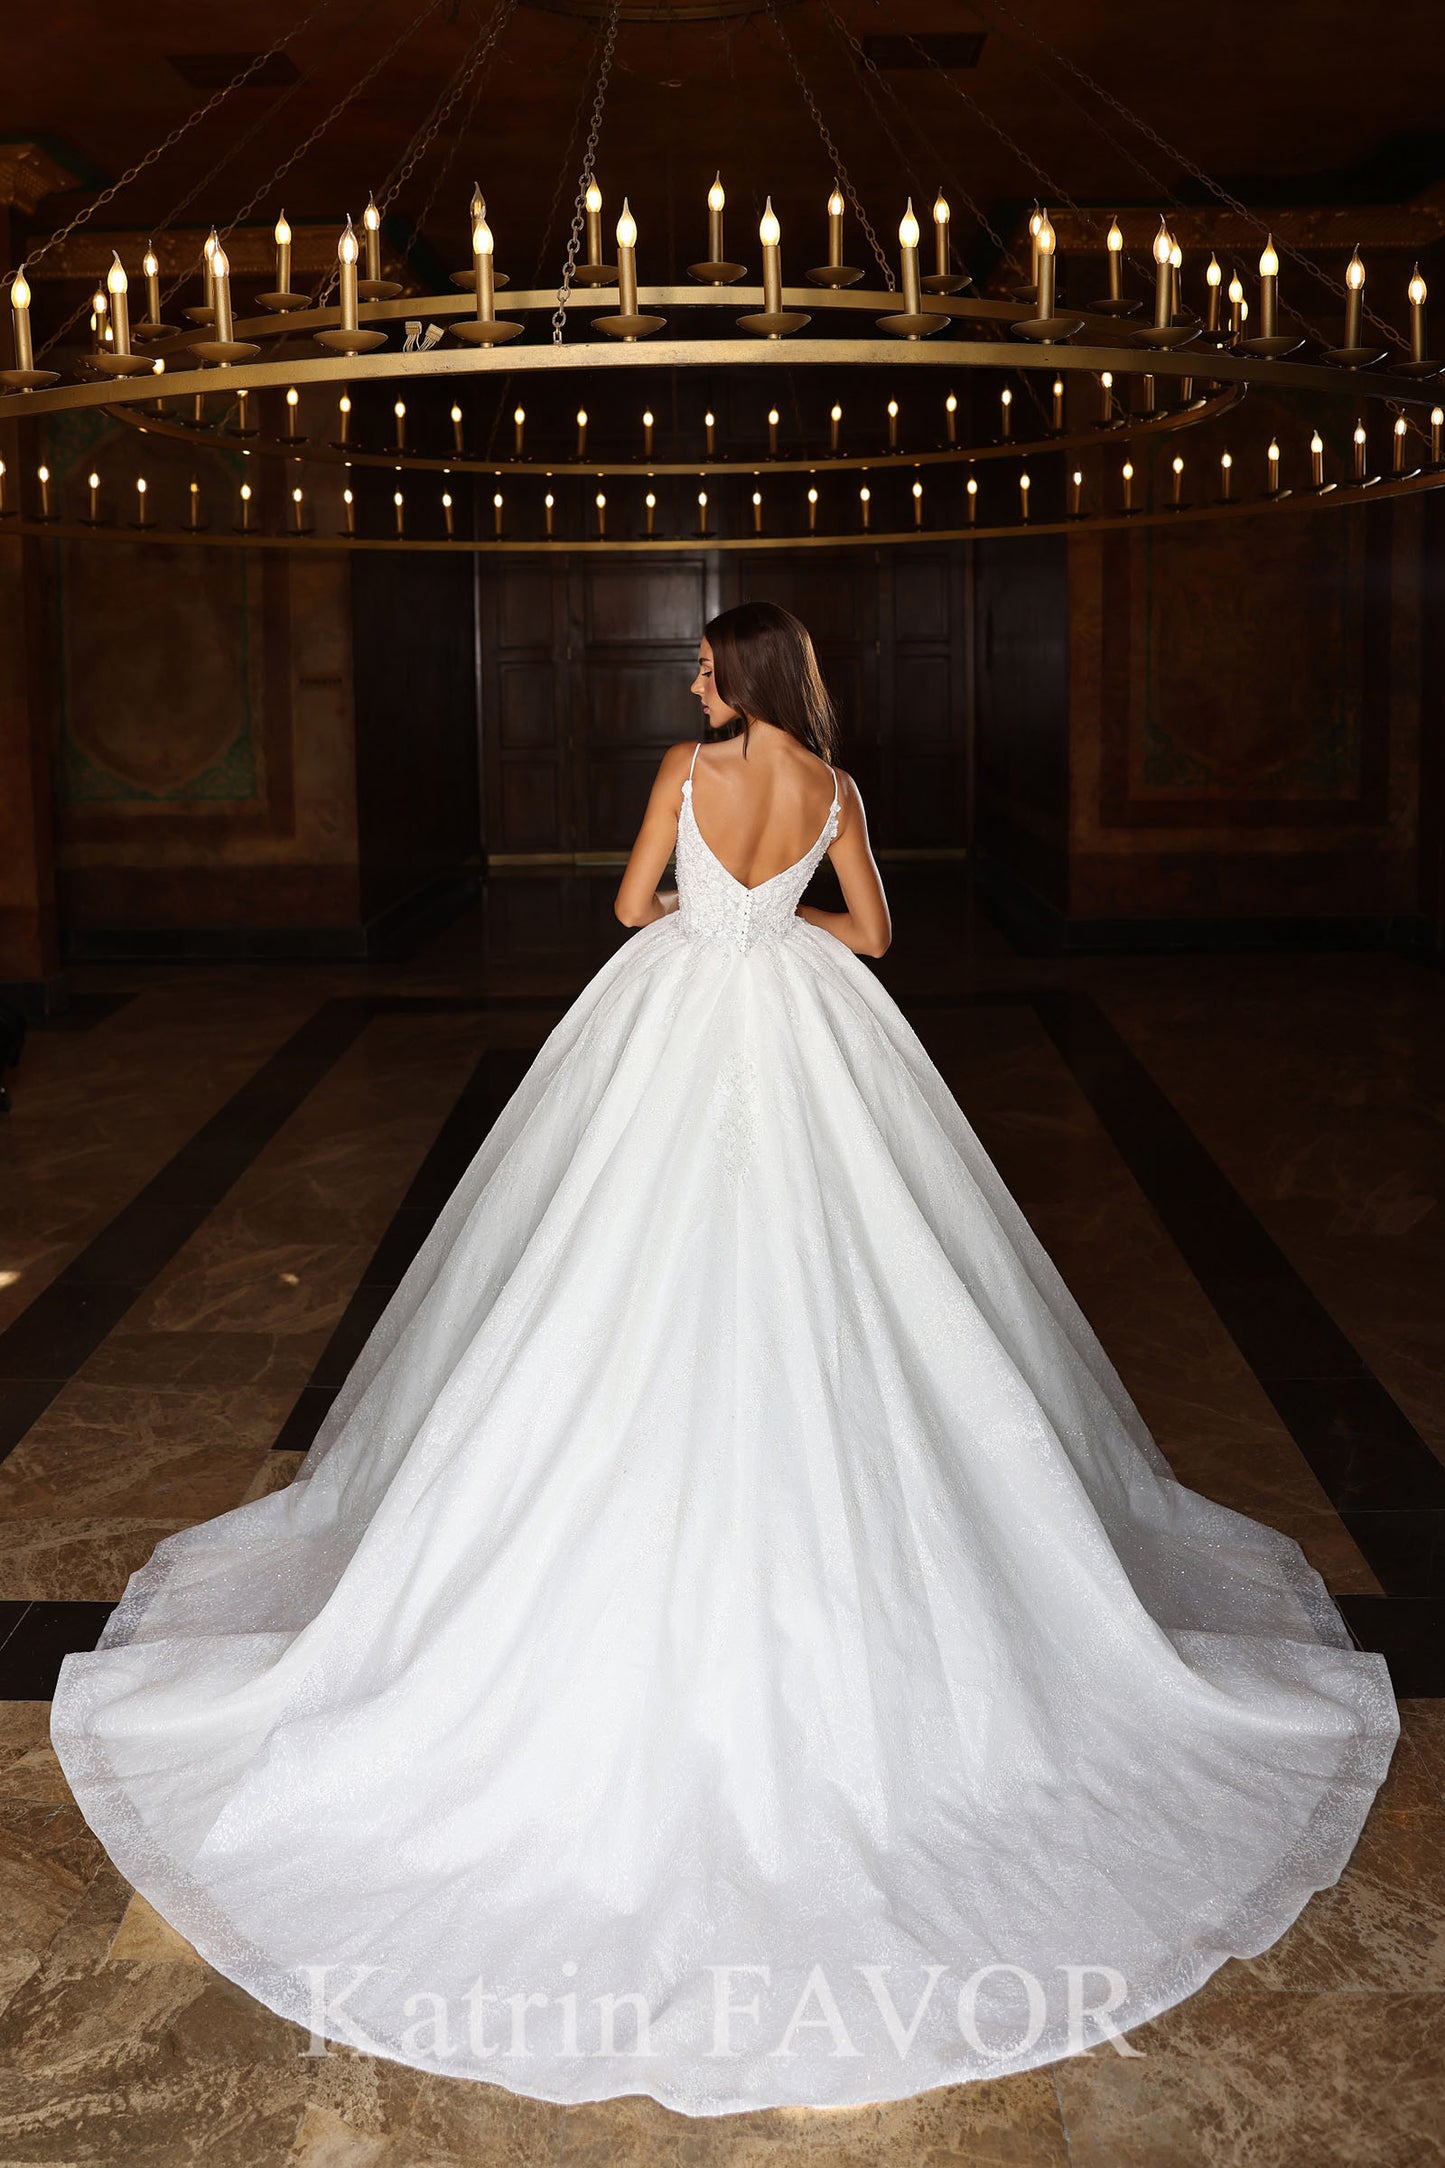 KatrinFAVORboutique-Sparkly glitter ballgown wedding dress